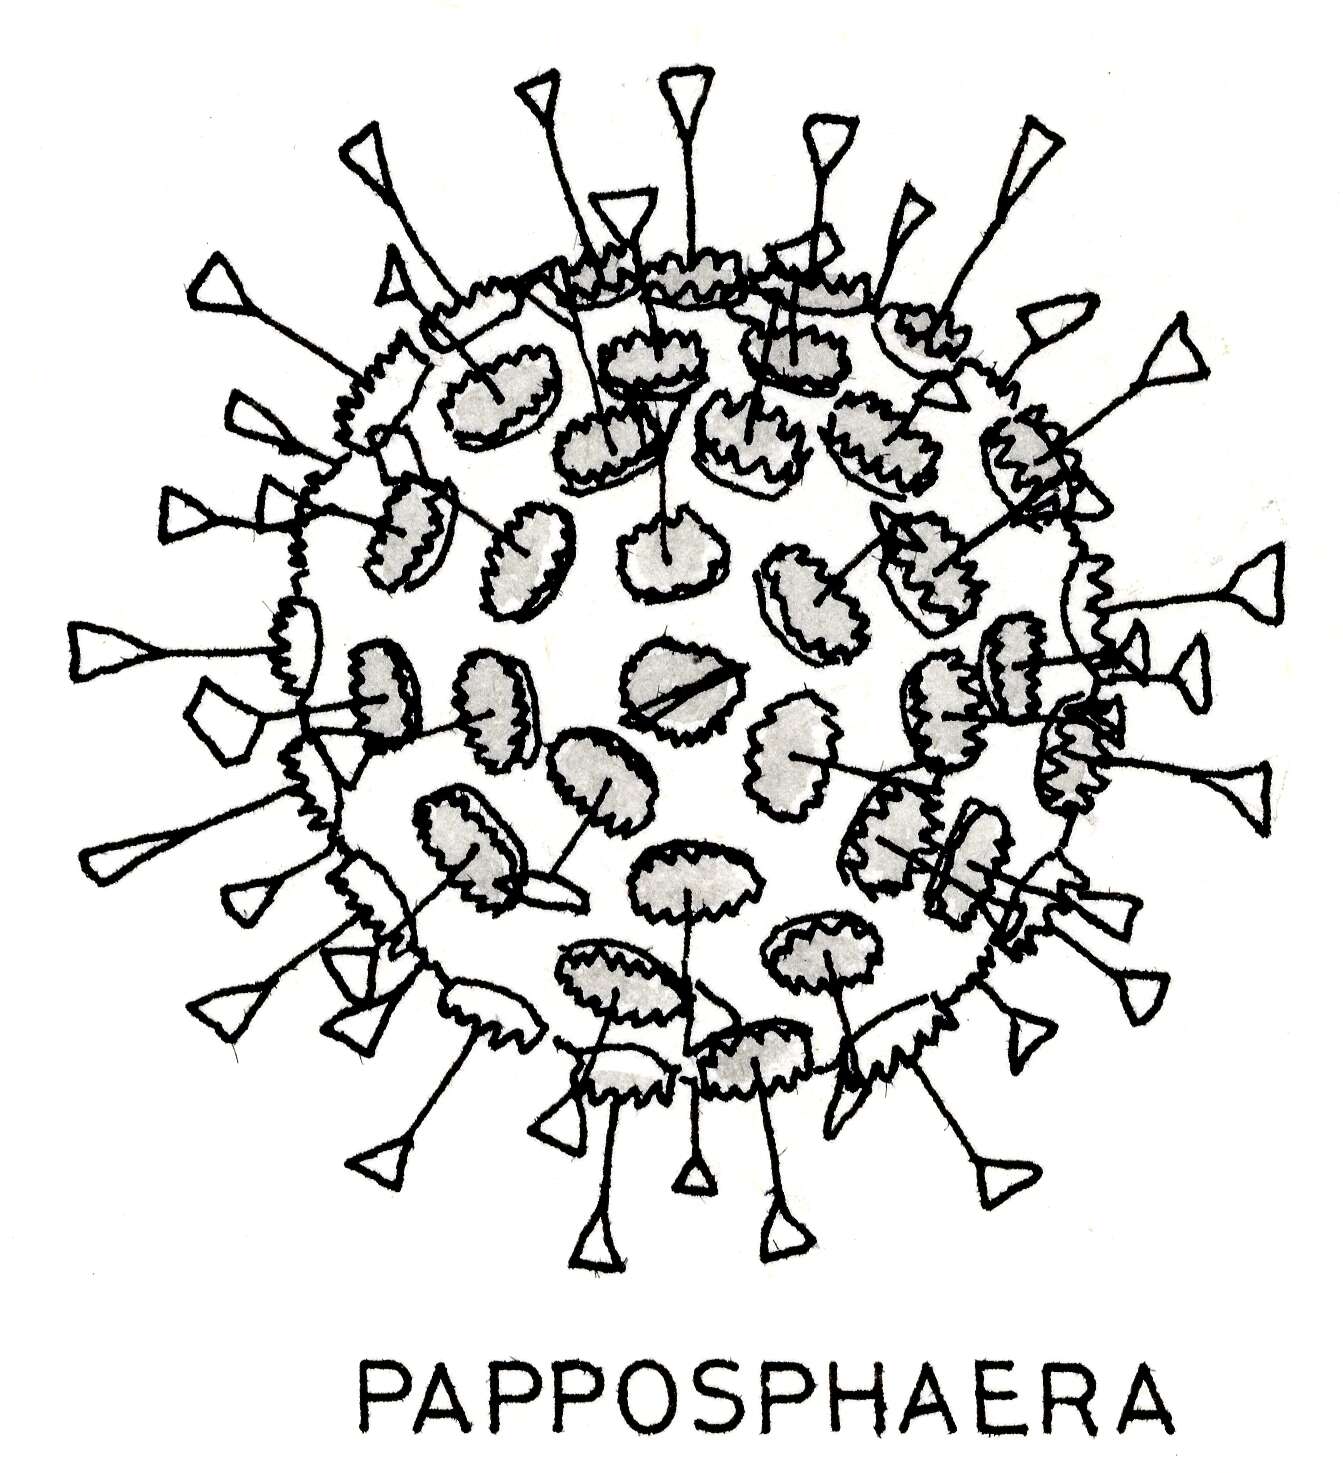 Image of Haptophyta